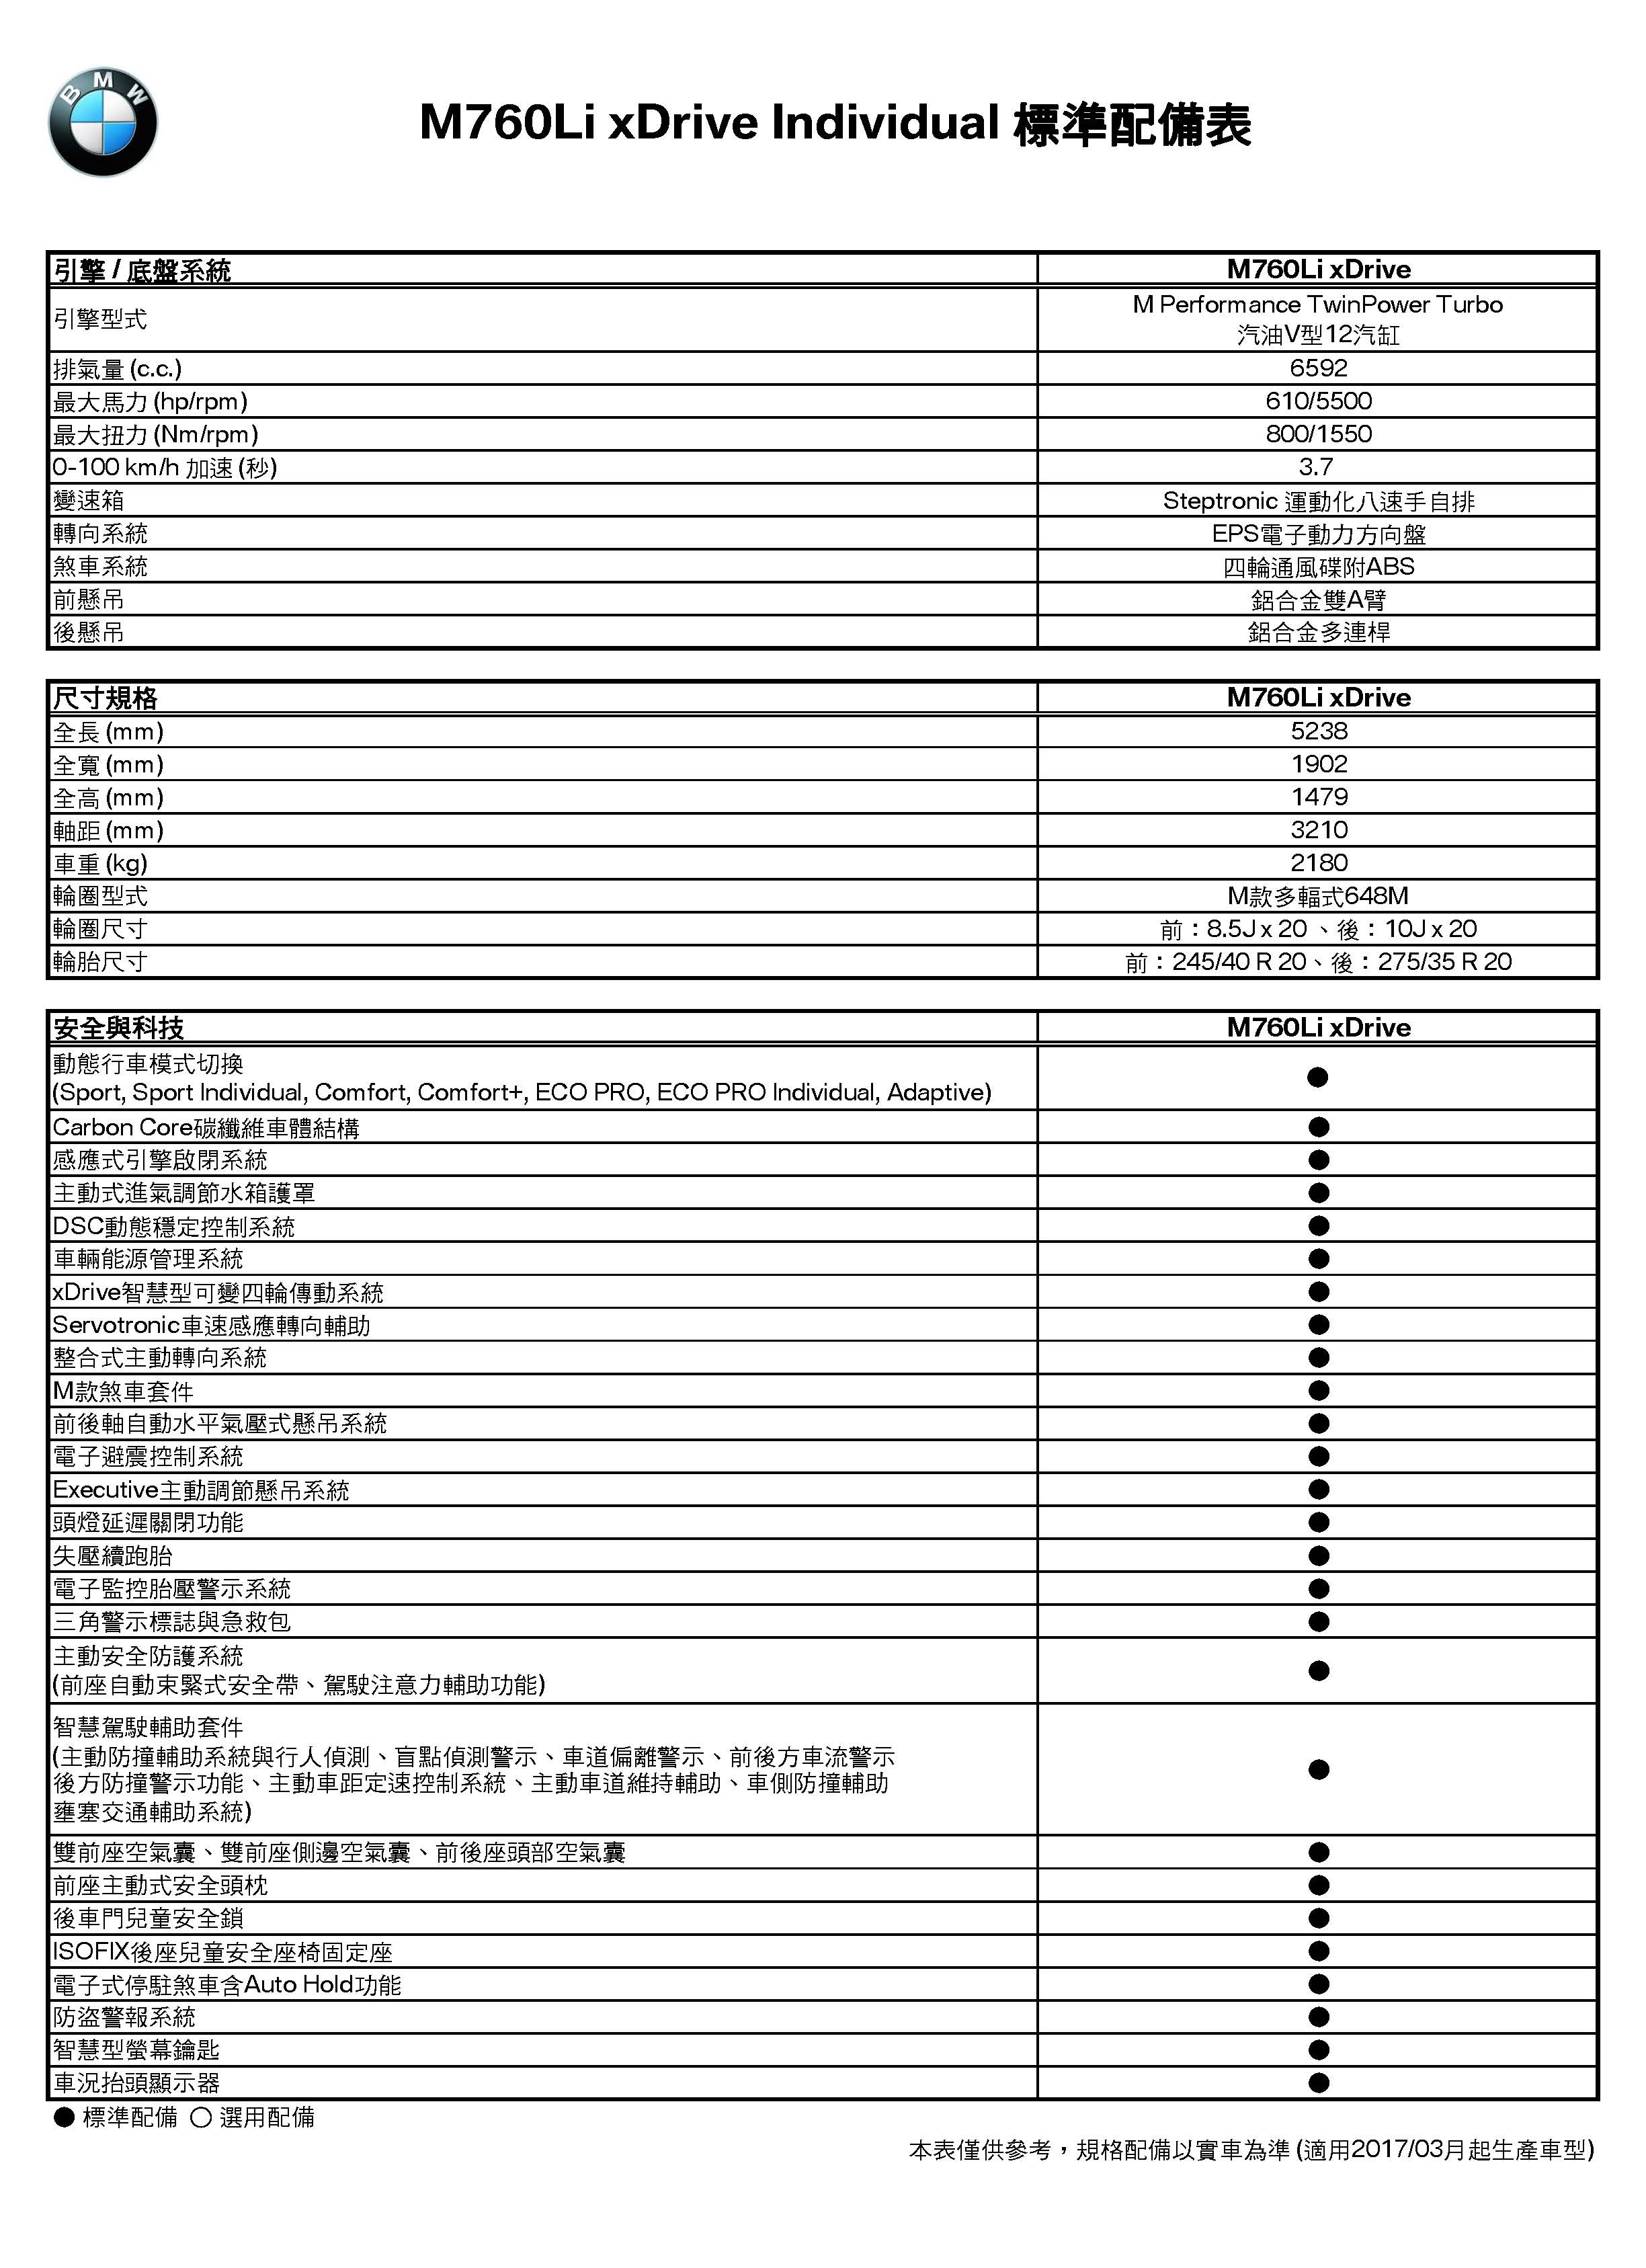 7系列(G12)M760Li xDrive規格配備表(2017-03)_頁面_1